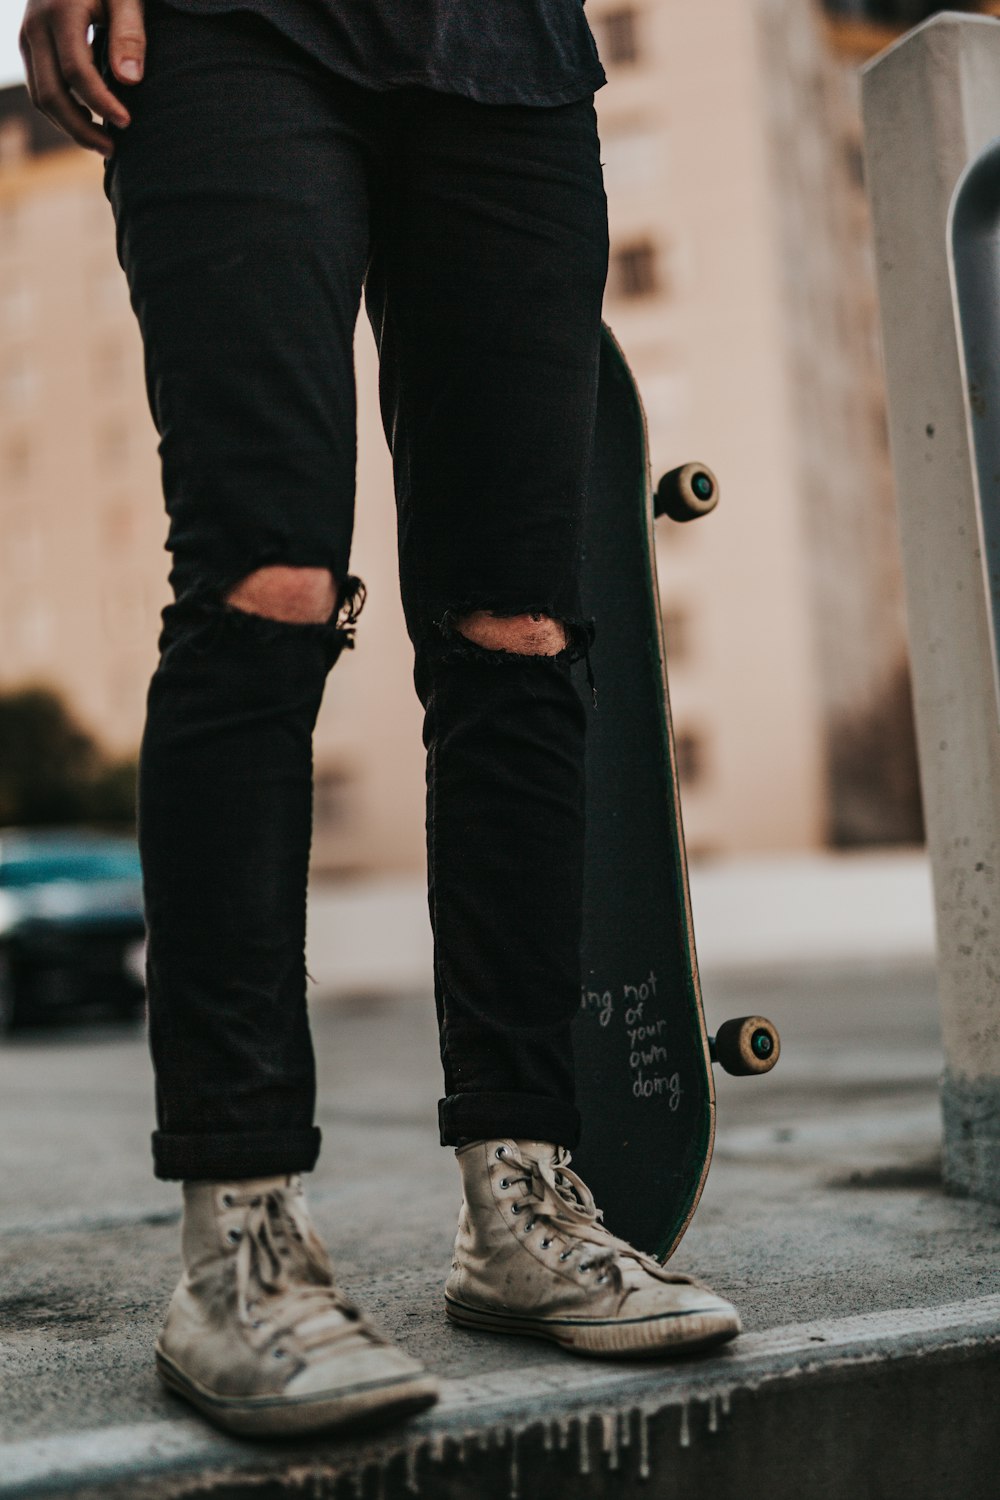 Persona que usa pantalones de mezclilla negros mientras sostiene una patineta